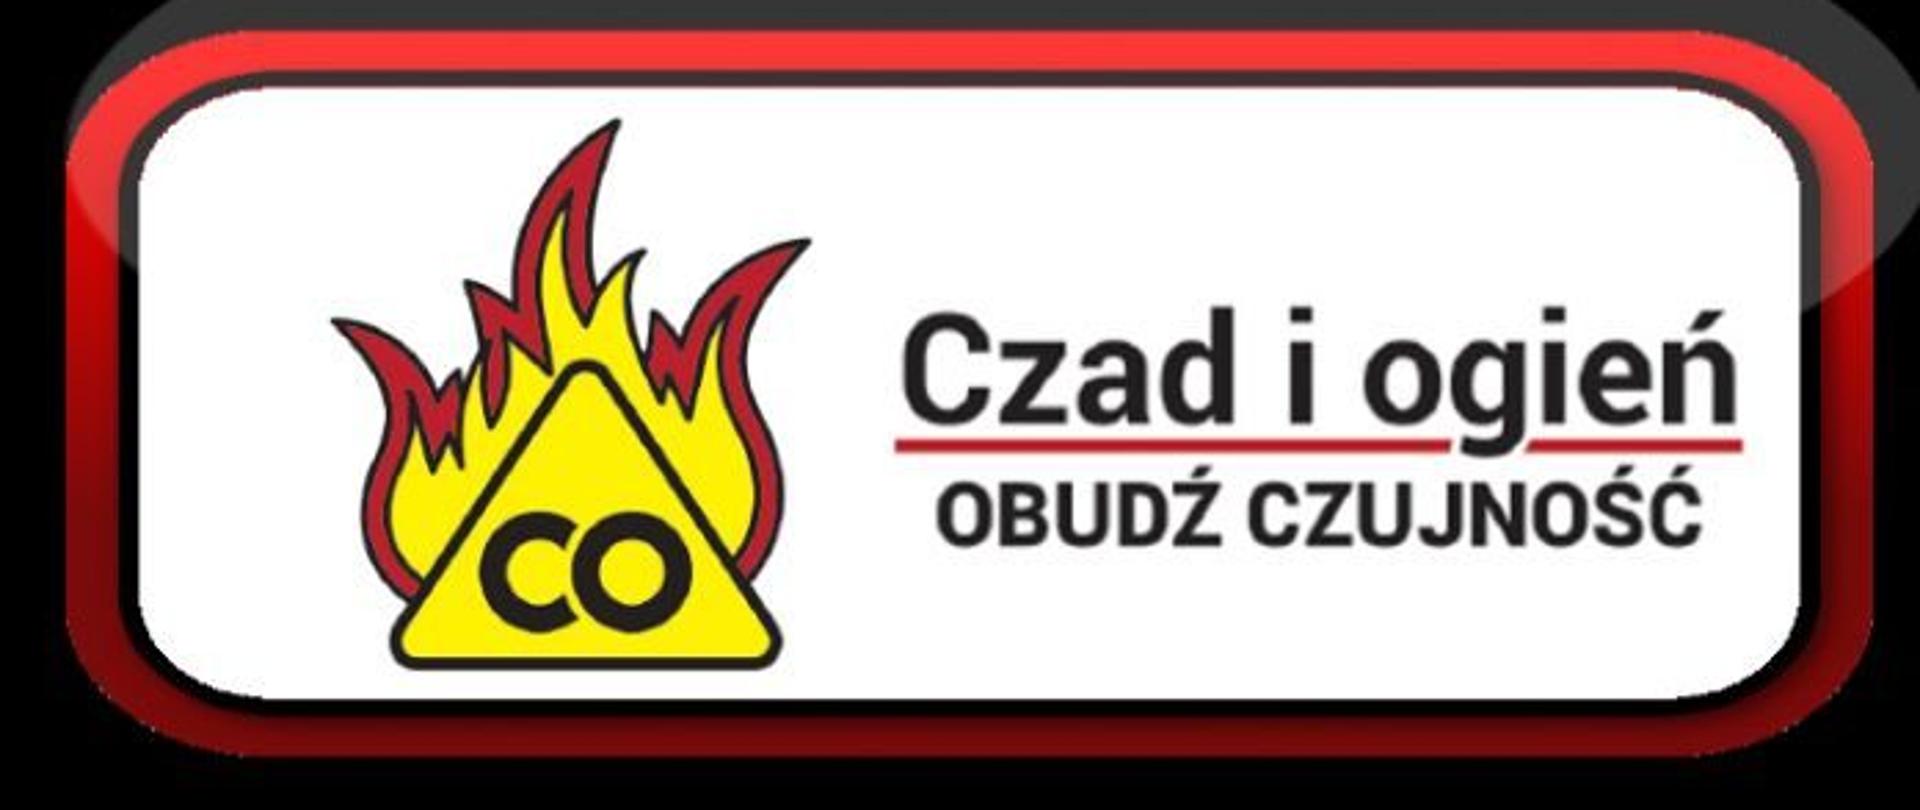 Logo artykułu "Czad i ogień - obudź czujność"